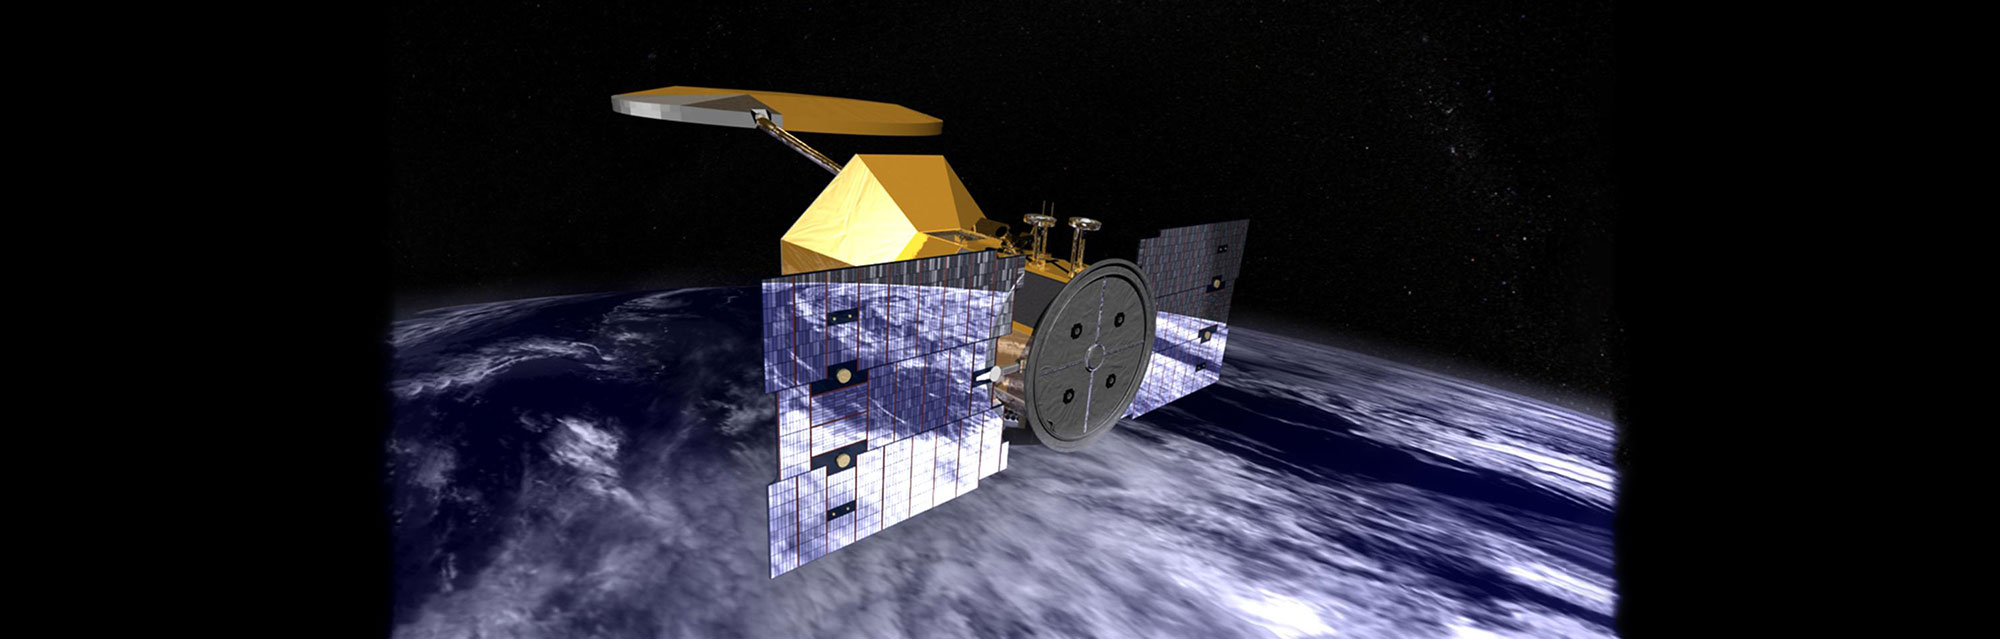 Aquarius/Satélite de Aplicaciones Científicas-D (Aquarius/SAC-D) Mission |  PO.DAAC / JPL / NASA